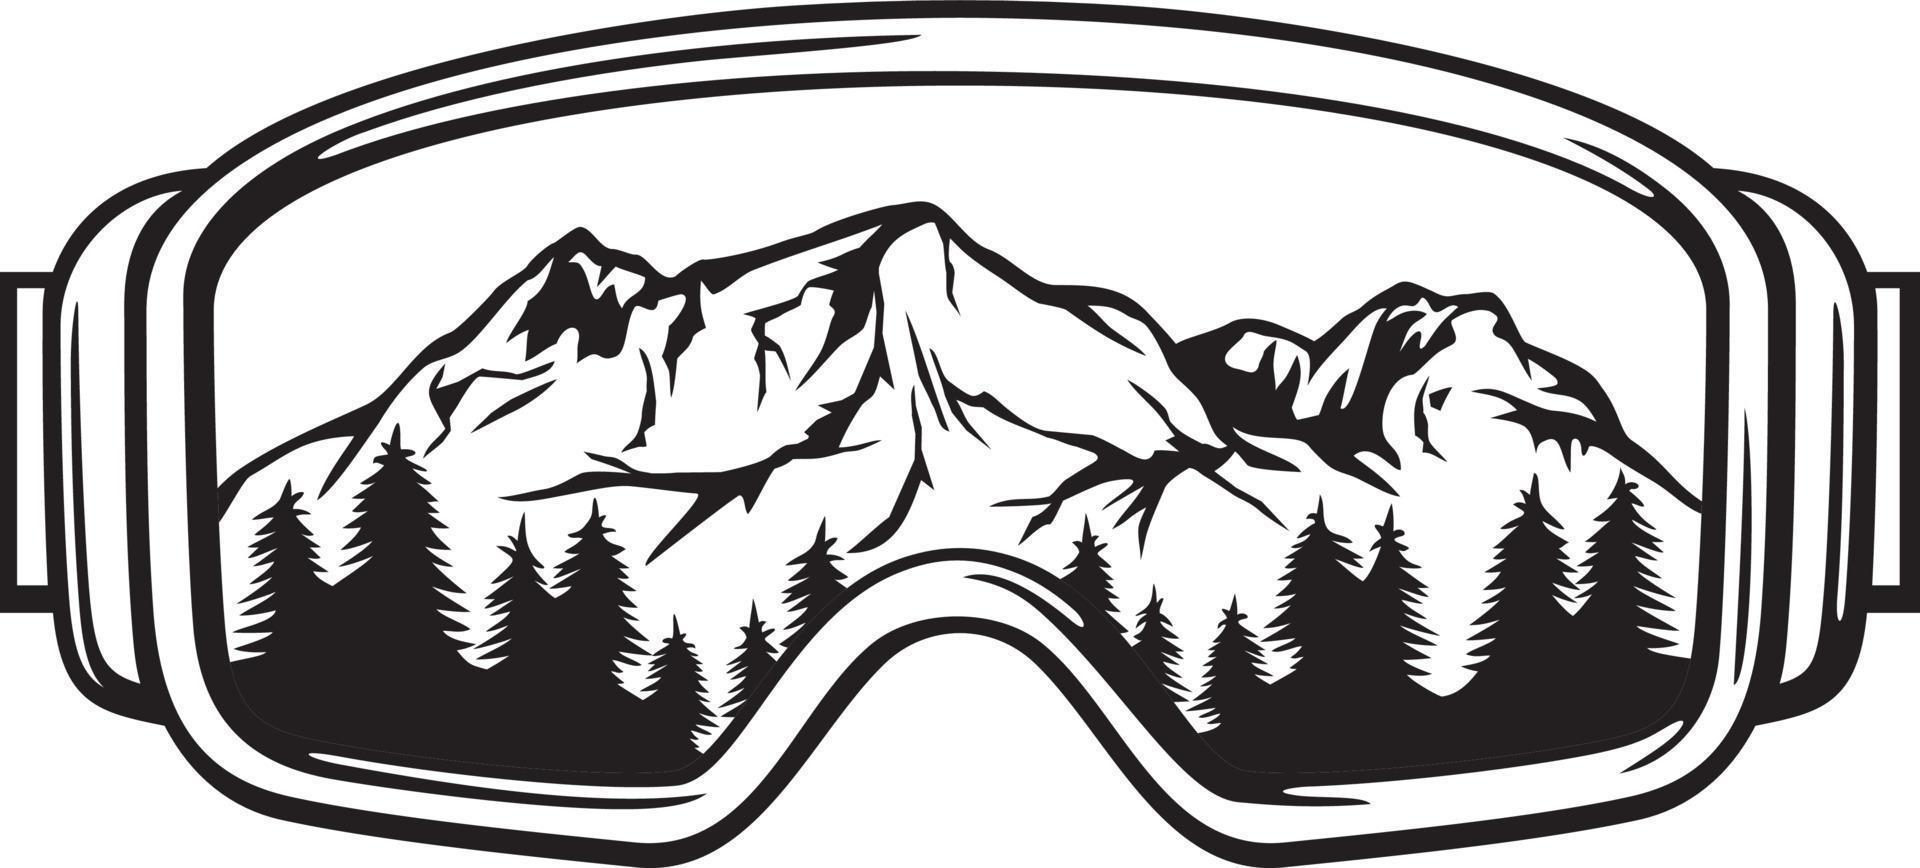 gafas de esquí con paisaje montañoso - gafas deportivas de invierno. ilustración vectorial vector